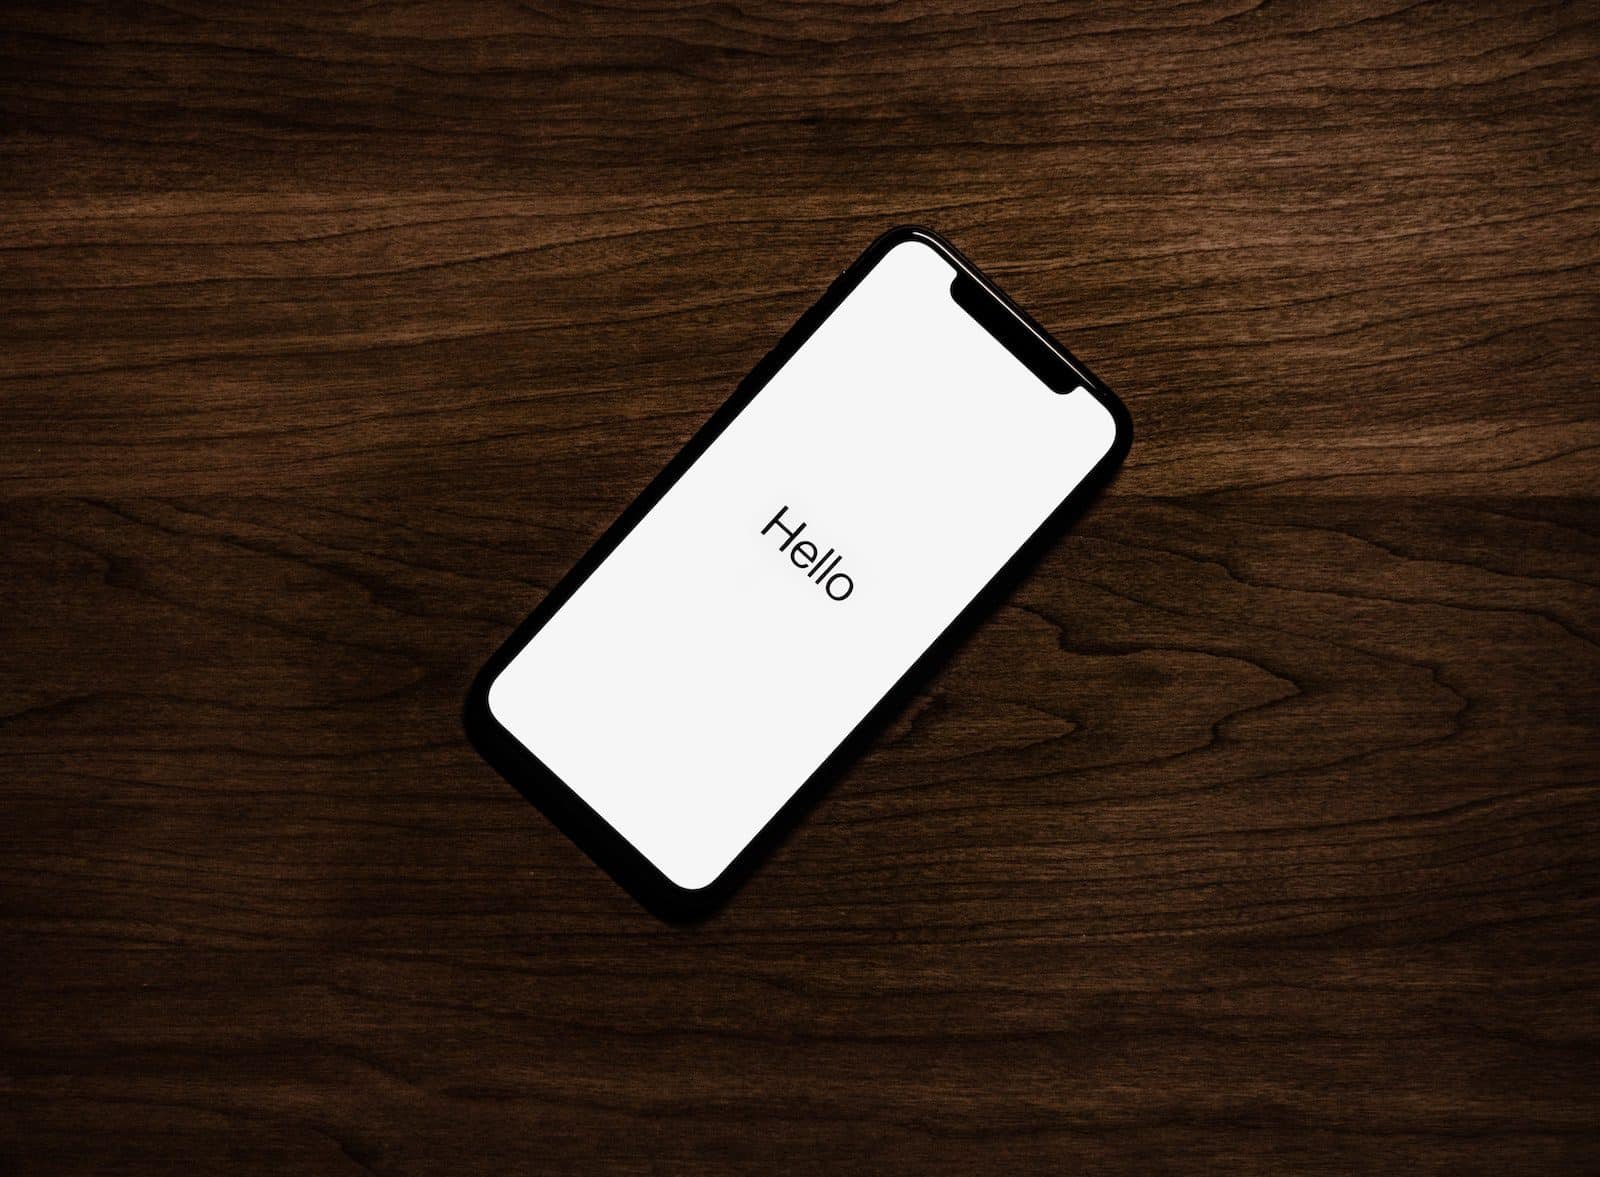 ingeschakeld iPhone bovenop bruin houten oppervlak